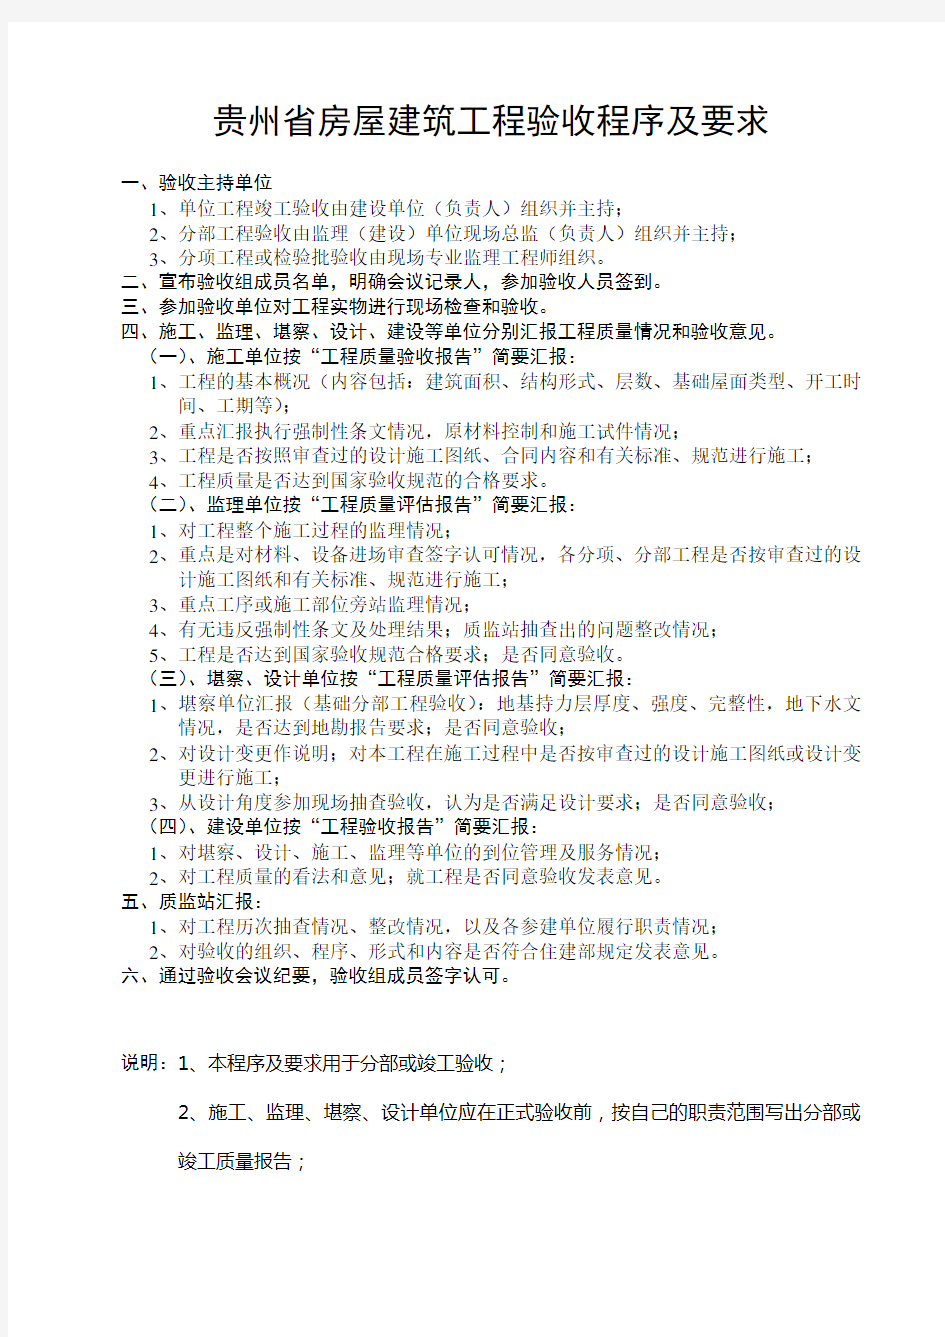 7贵州省房屋建筑工程验收程序及要求